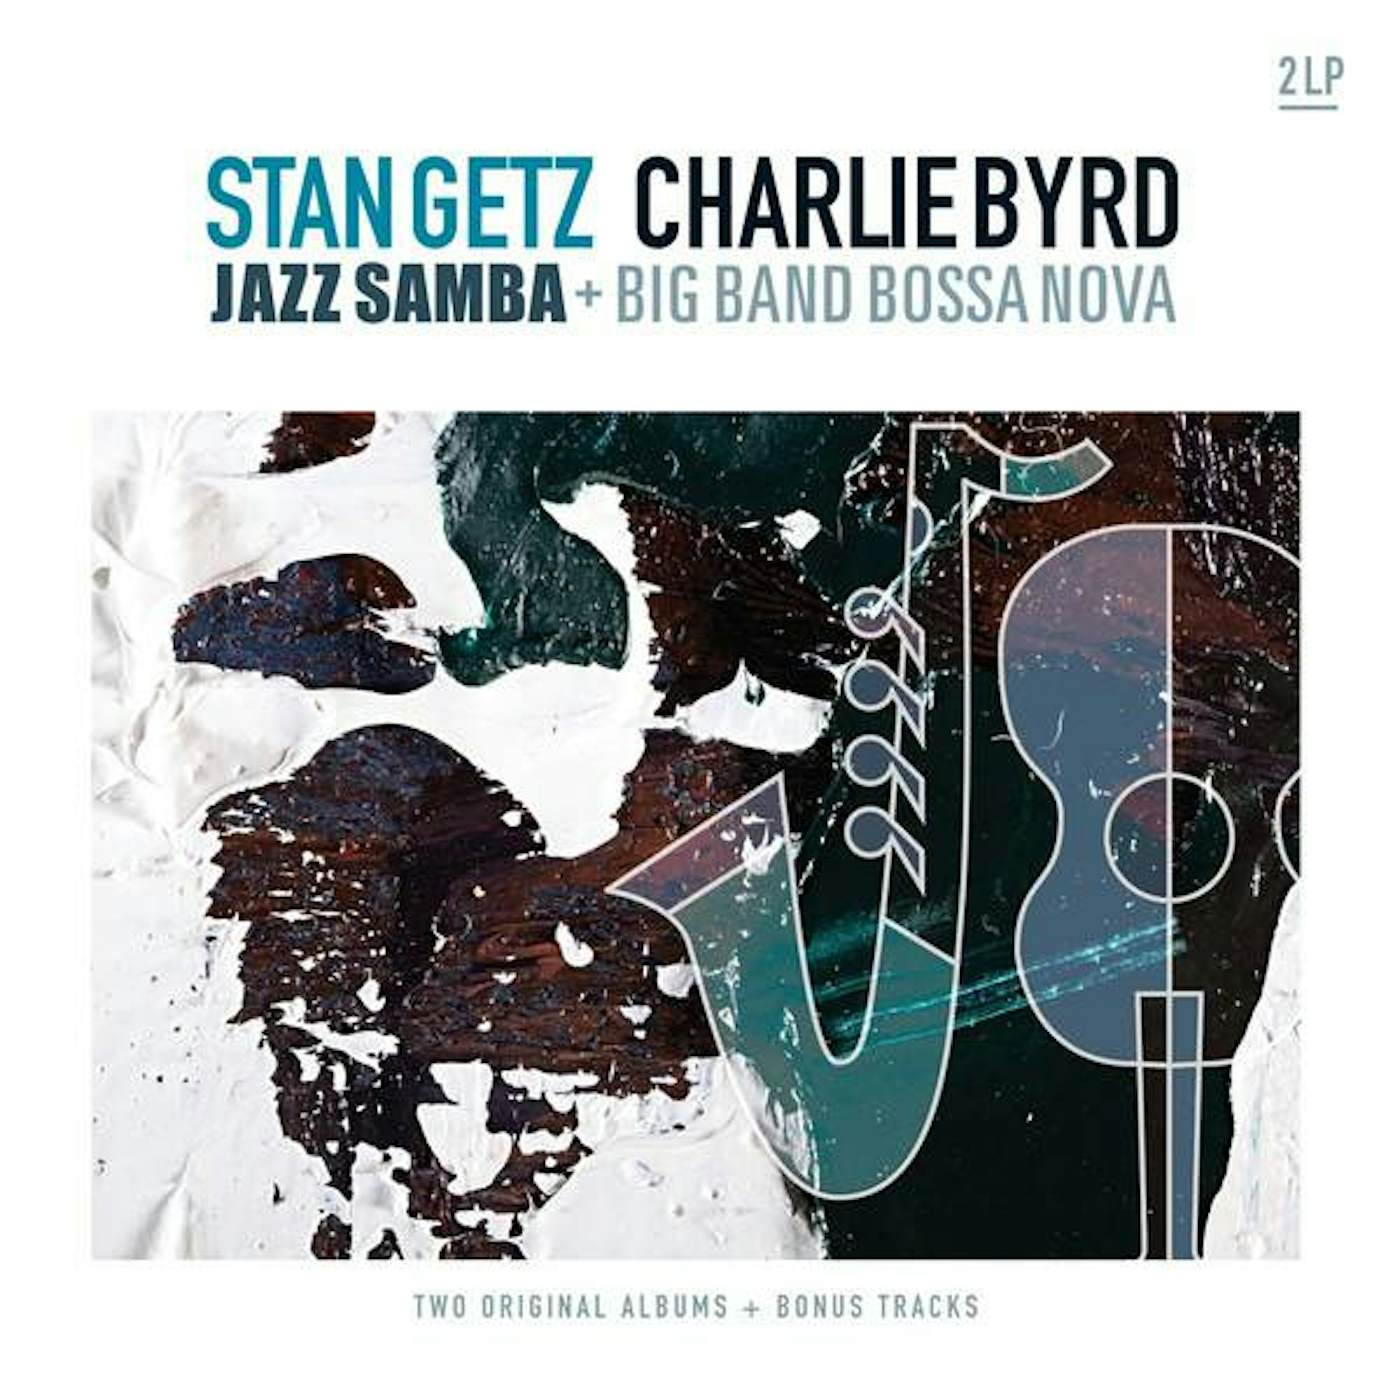 Stan Getz & Charlie Byrd Jazz Samba & Big Band Bossa Nova (180g) vinyl record